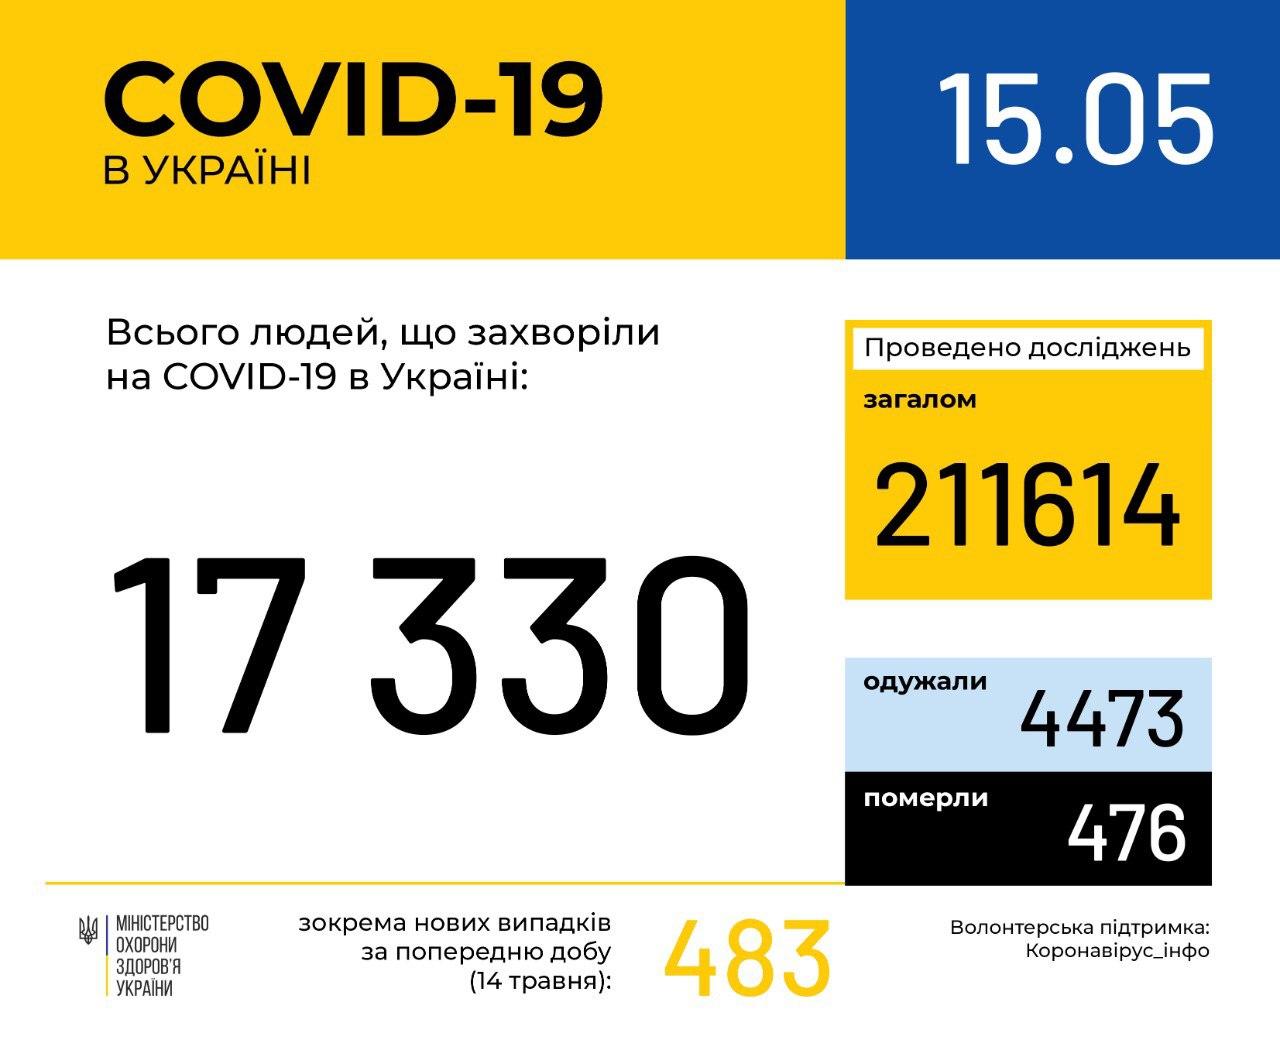 В Україні зафіксовано 17330 випадків коронавірусної хвороби COVID-19, - МОЗ